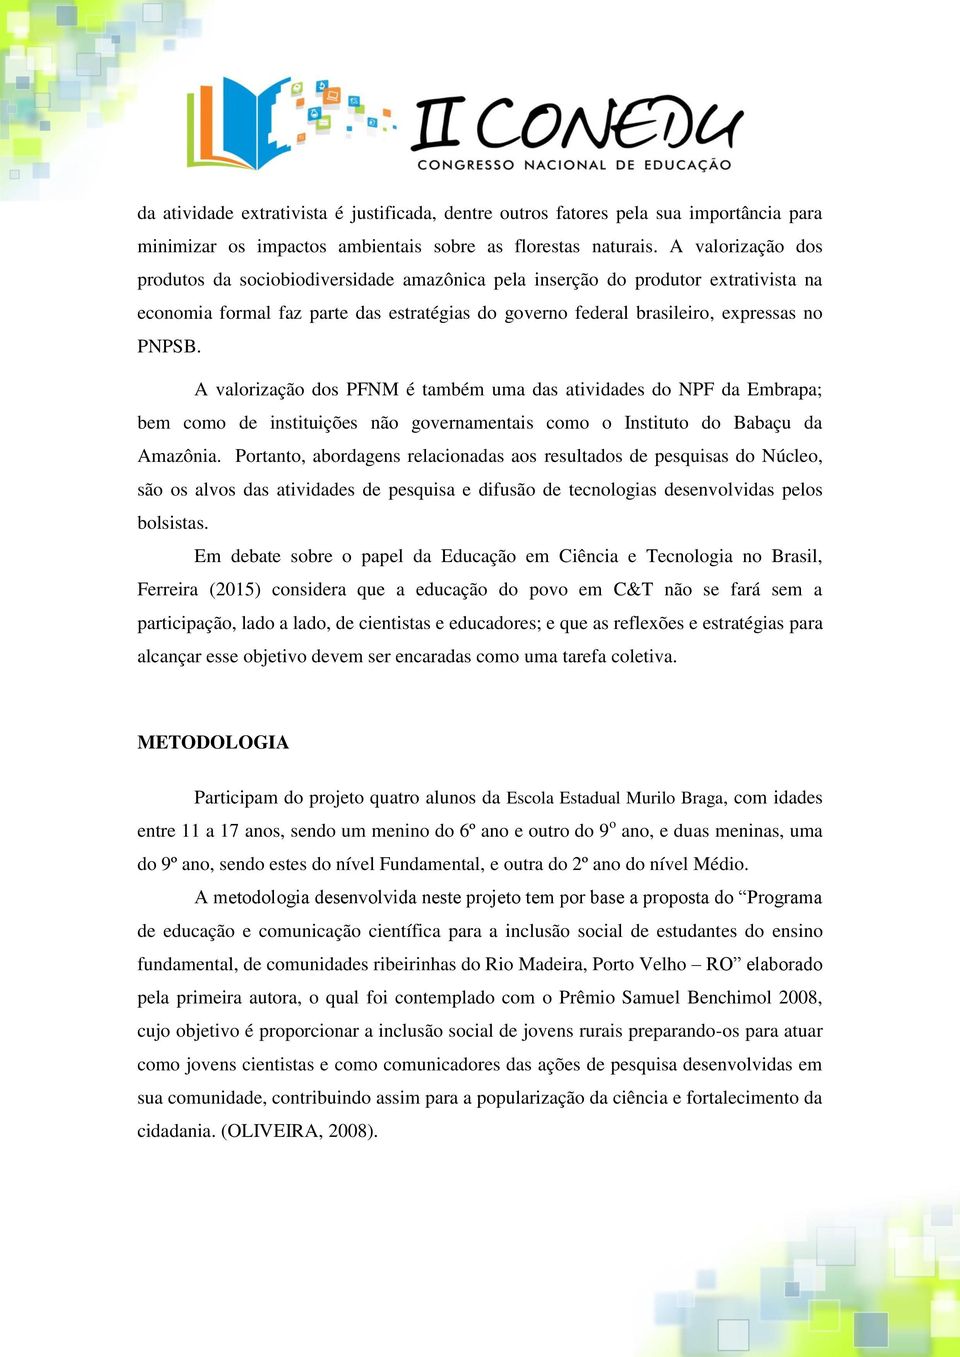 A valorização dos PFNM é também uma das atividades do NPF da Embrapa; bem como de instituições não governamentais como o Instituto do Babaçu da Amazônia.